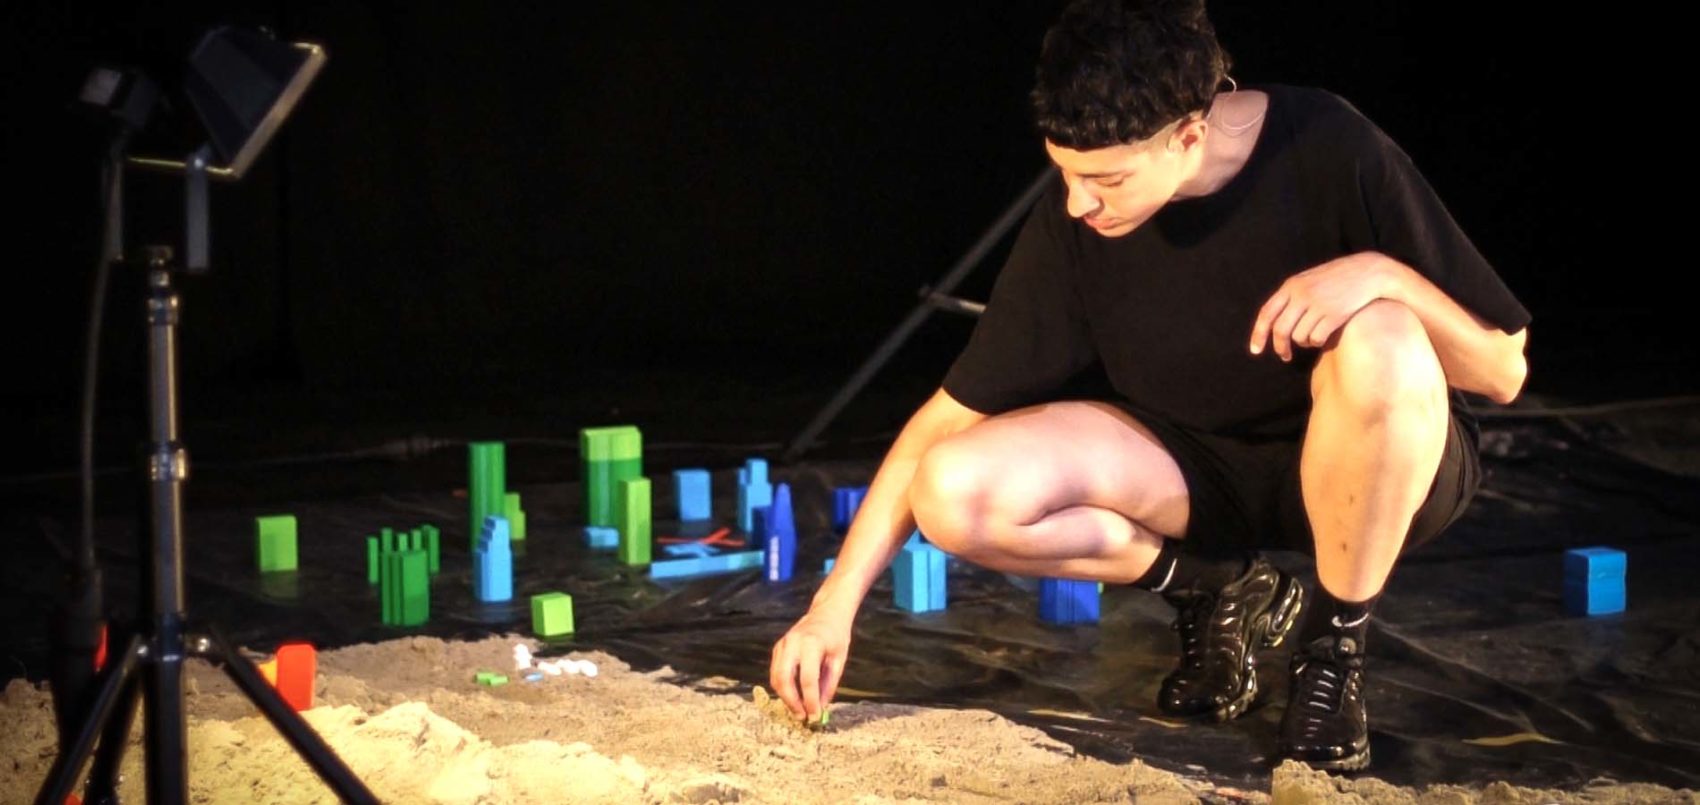 Léa Drouet sur scène, accroupit devant du sable et des immeubles miniatures